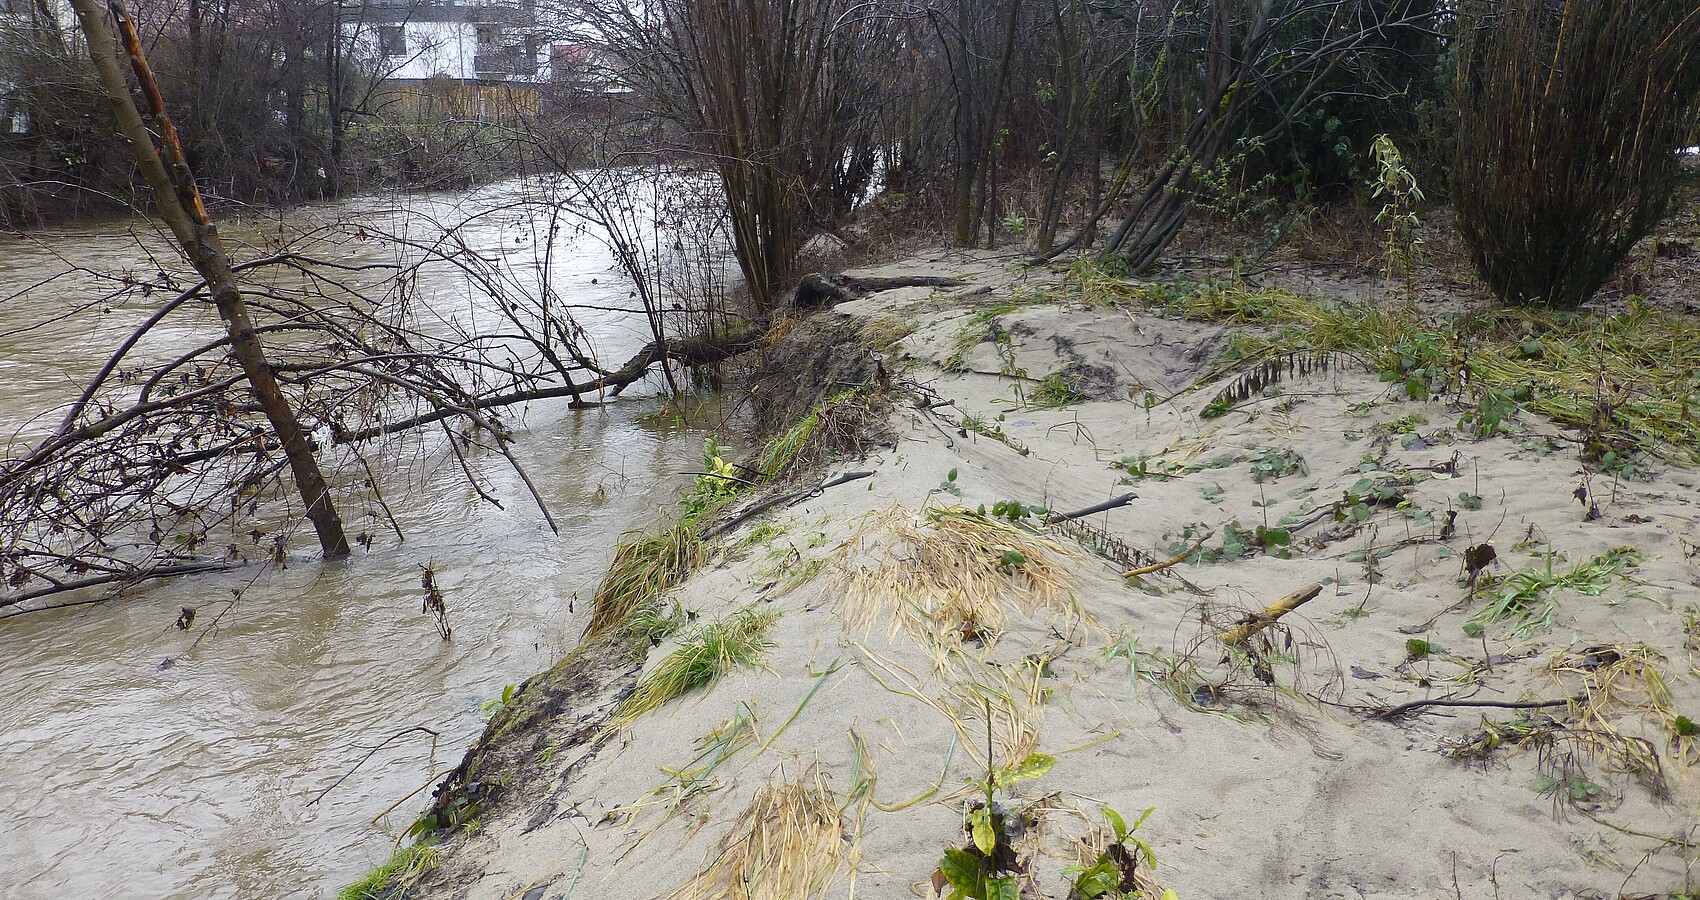 Schussen bei Brochenzell und Gestrück und Unrat am Ufer nach Hochwasser im Januar 2021